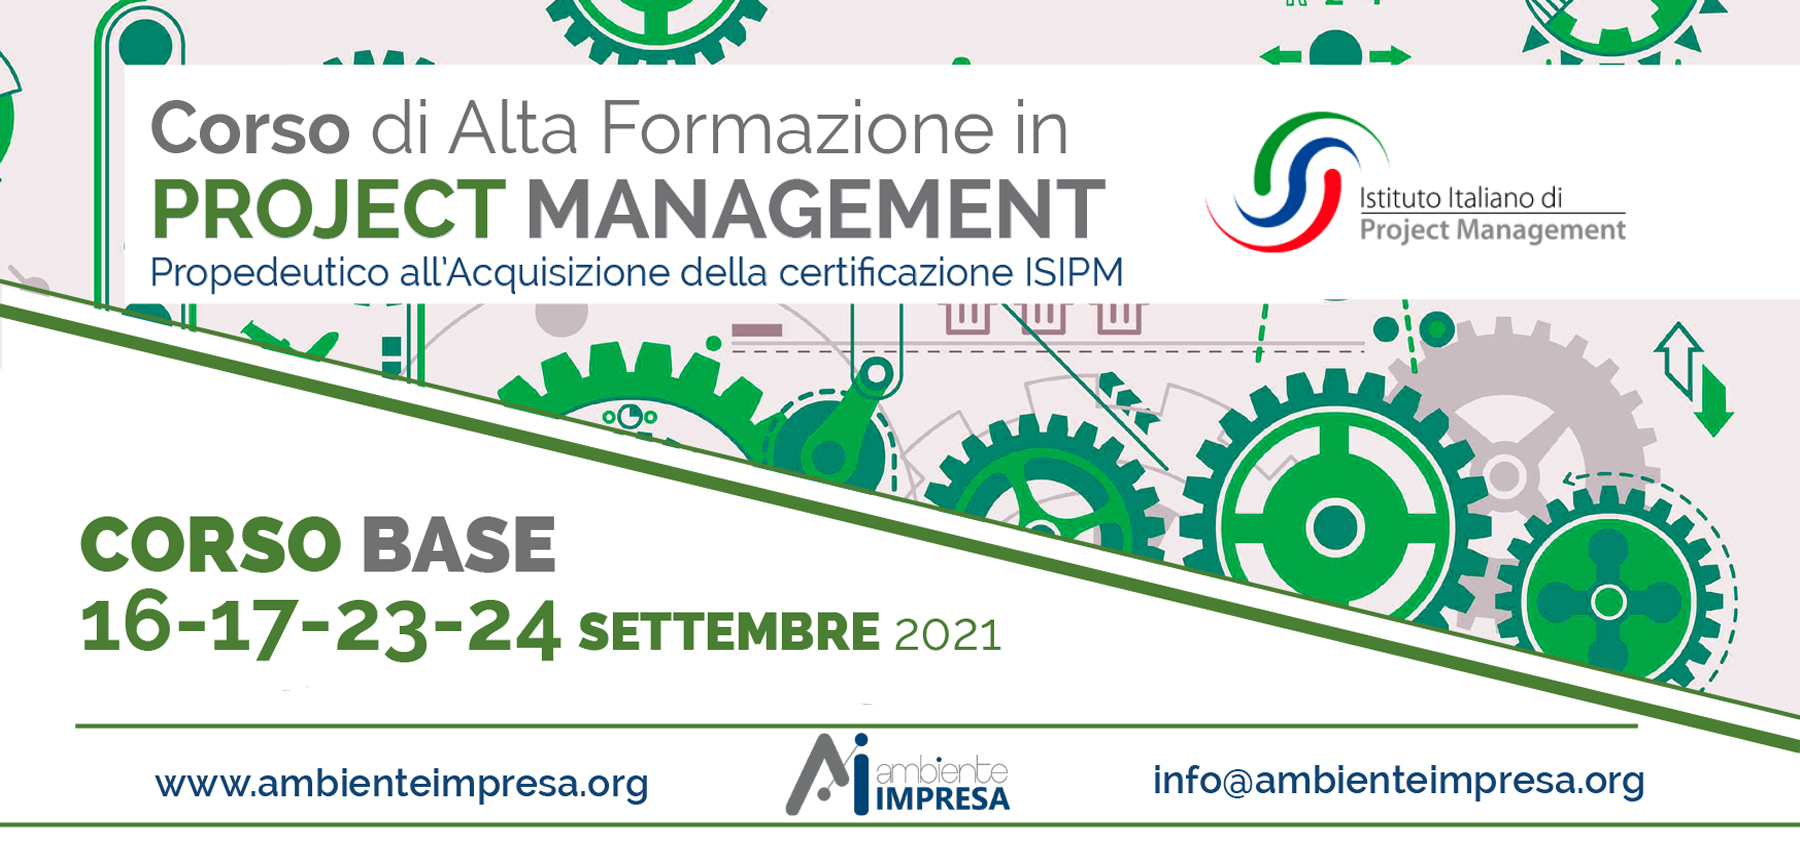 Project Management Settembre 2021 - Ambiente Impresa srl Cagliari - Formazione